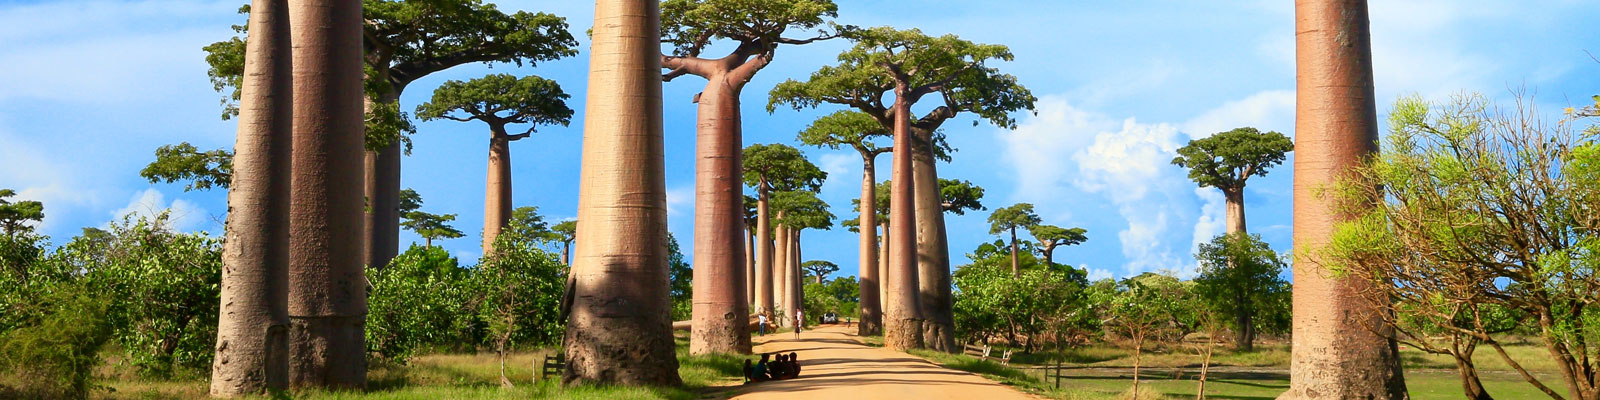 Madagascar  